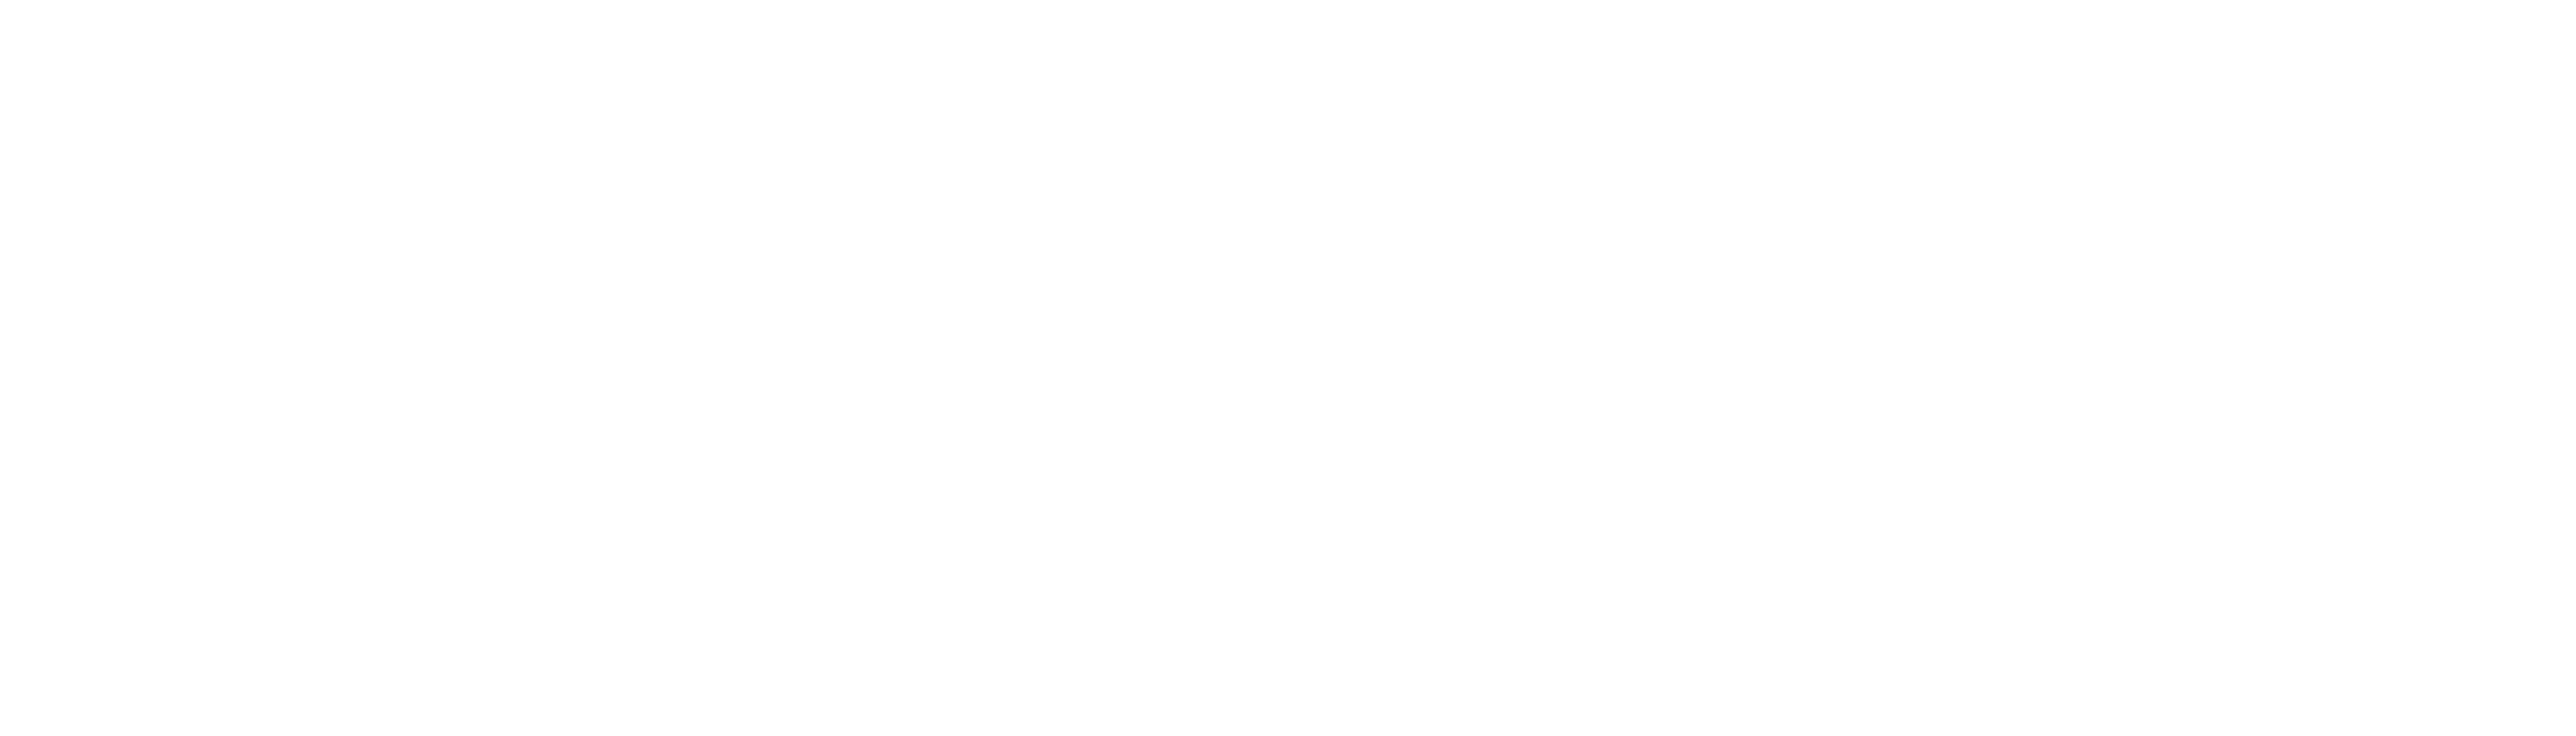 Donald's Cousin Gus logo